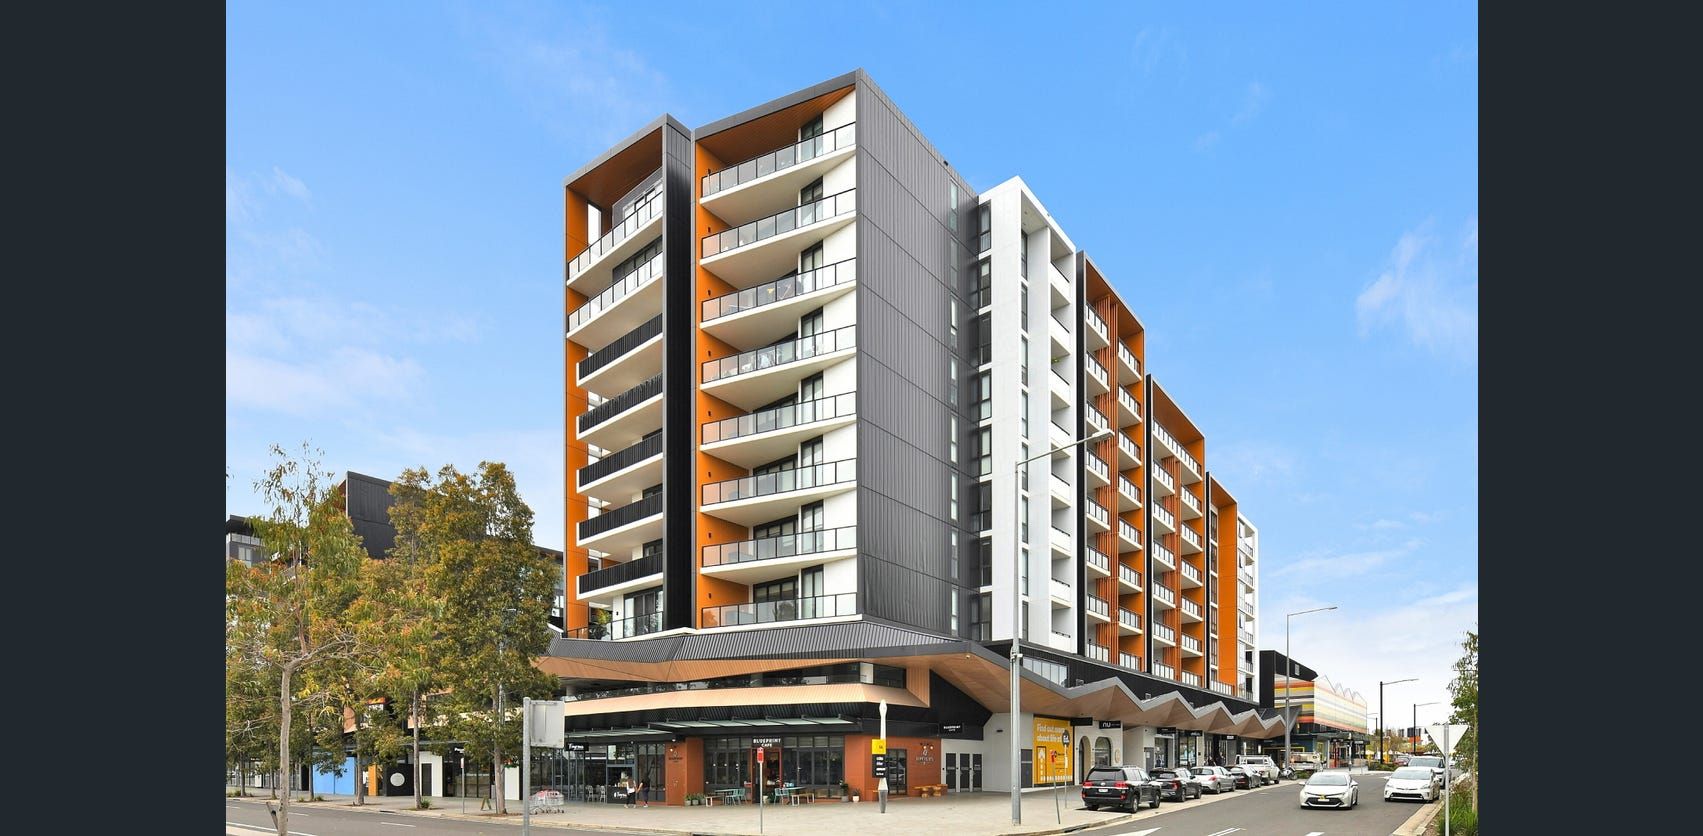 2 bedrooms Apartment / Unit / Flat in L10/2 Sergeant Street EDMONDSON PARK NSW, 2174